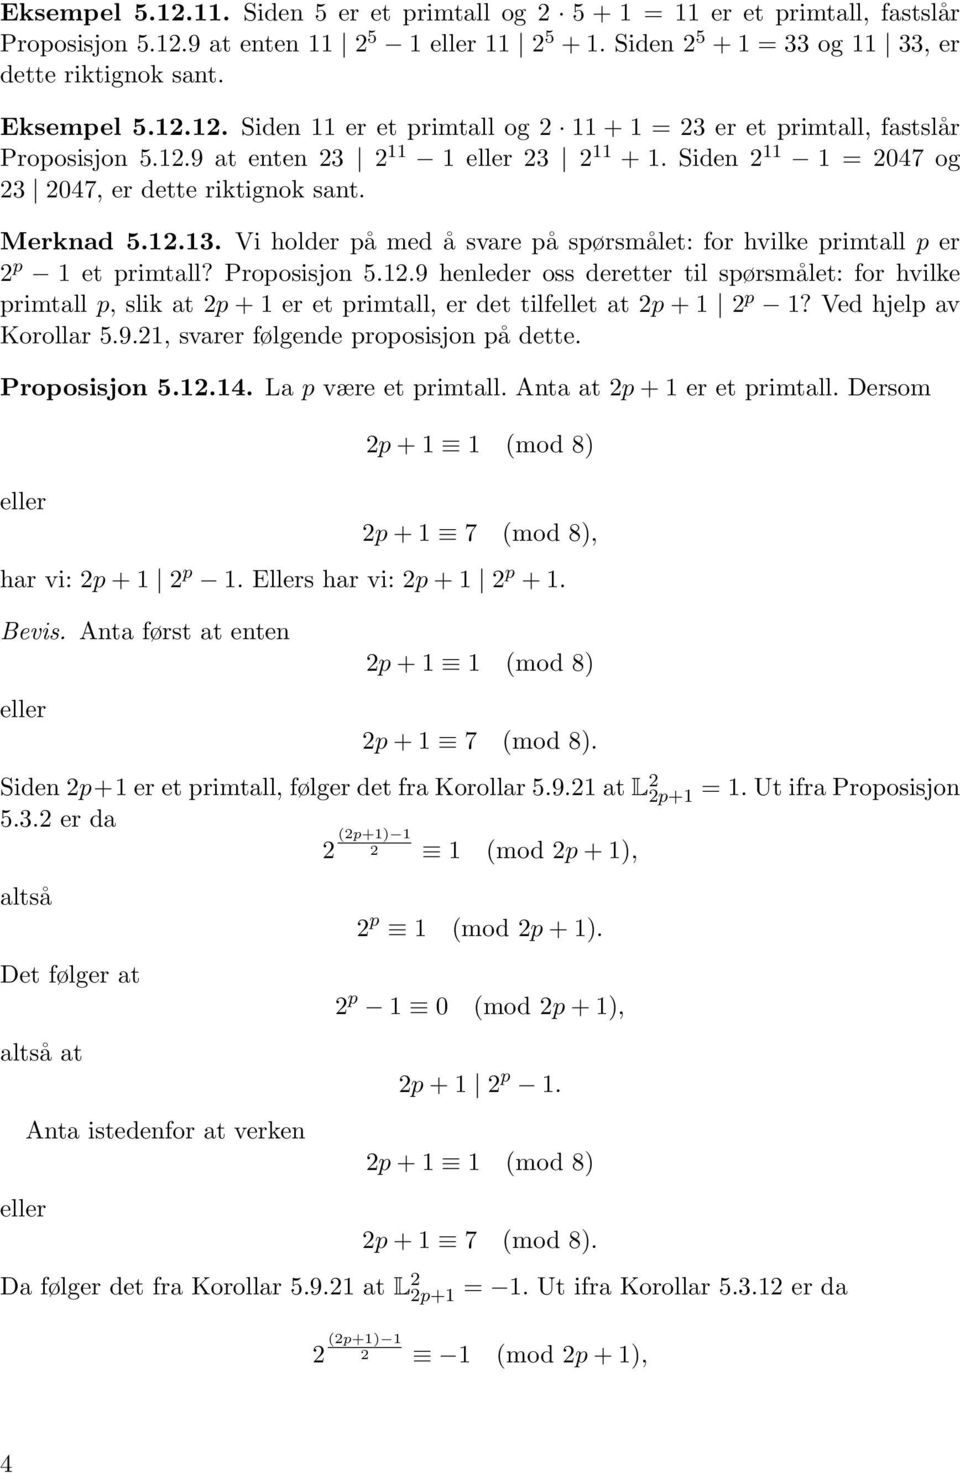 Proposisjon 5.12.9 henleder oss deretter til spørsmålet: for hvilke primtall p, slik at 2p + 1 er et primtall, er det tilfellet at 2p + 1 2 p 1? Ved hjelp av Korollar 5.9.21, svarer følgende proposisjon på dette.